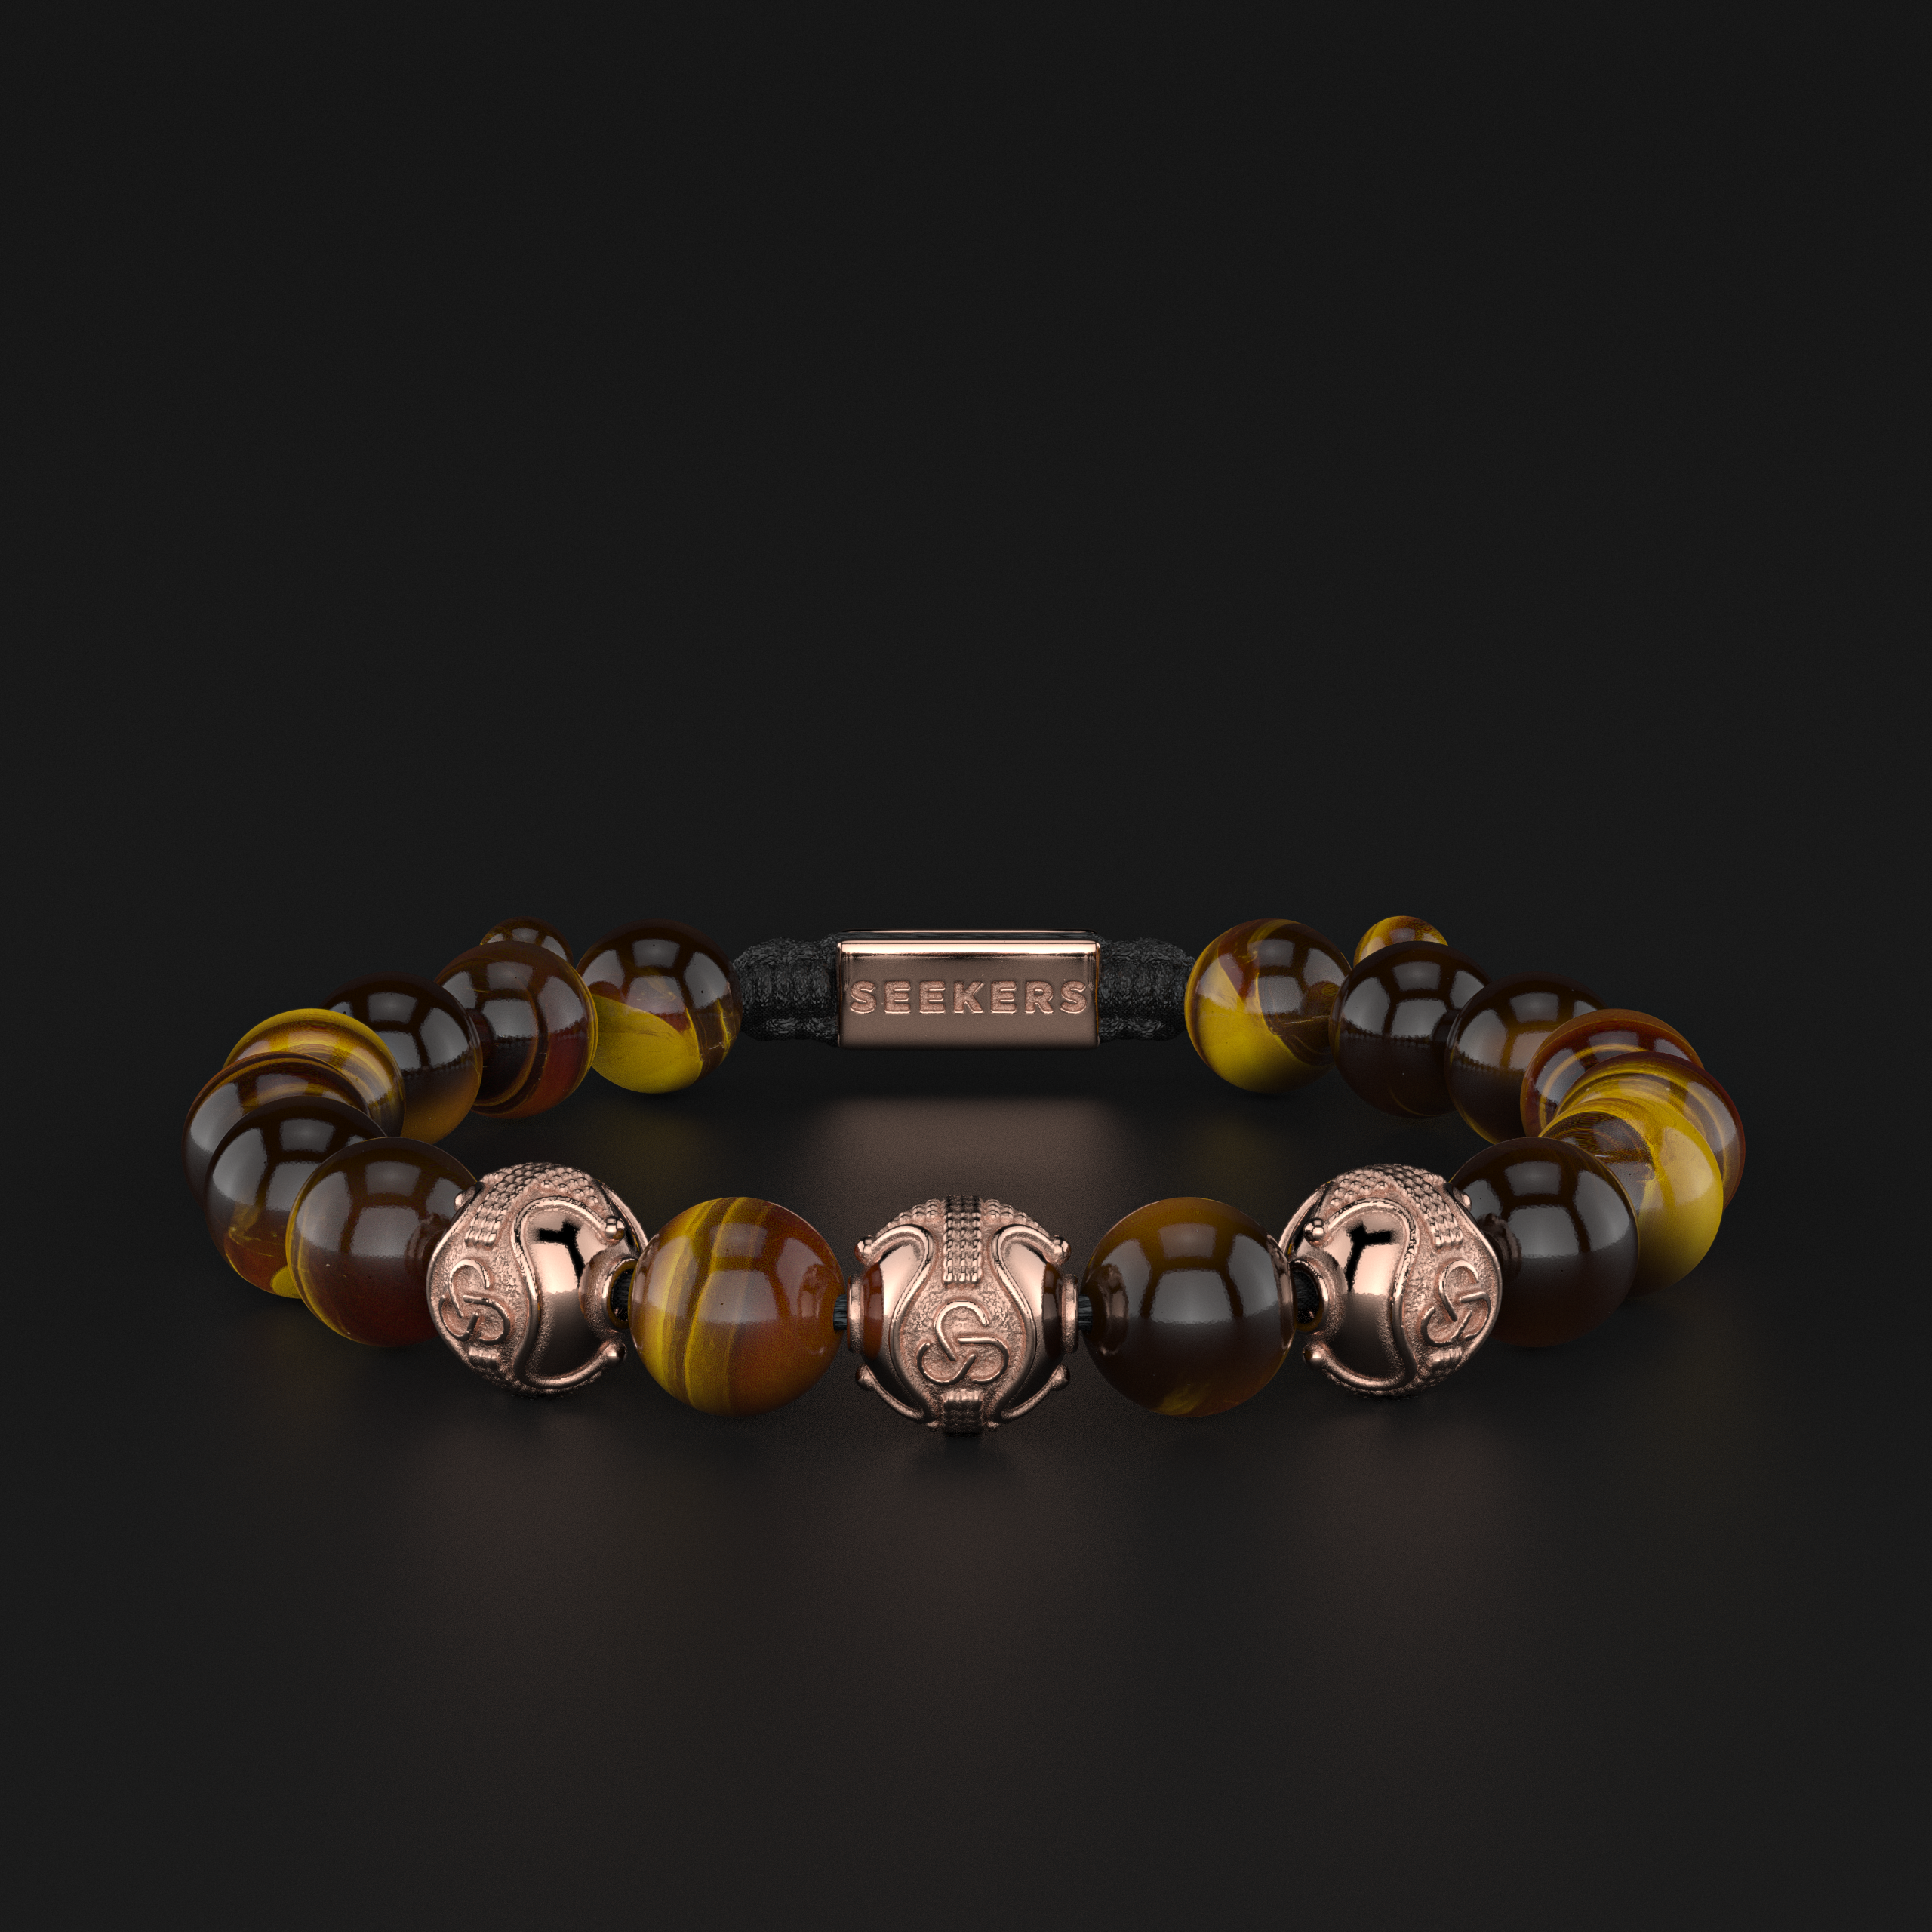 Solid Rose Gold Bracelet - Premium